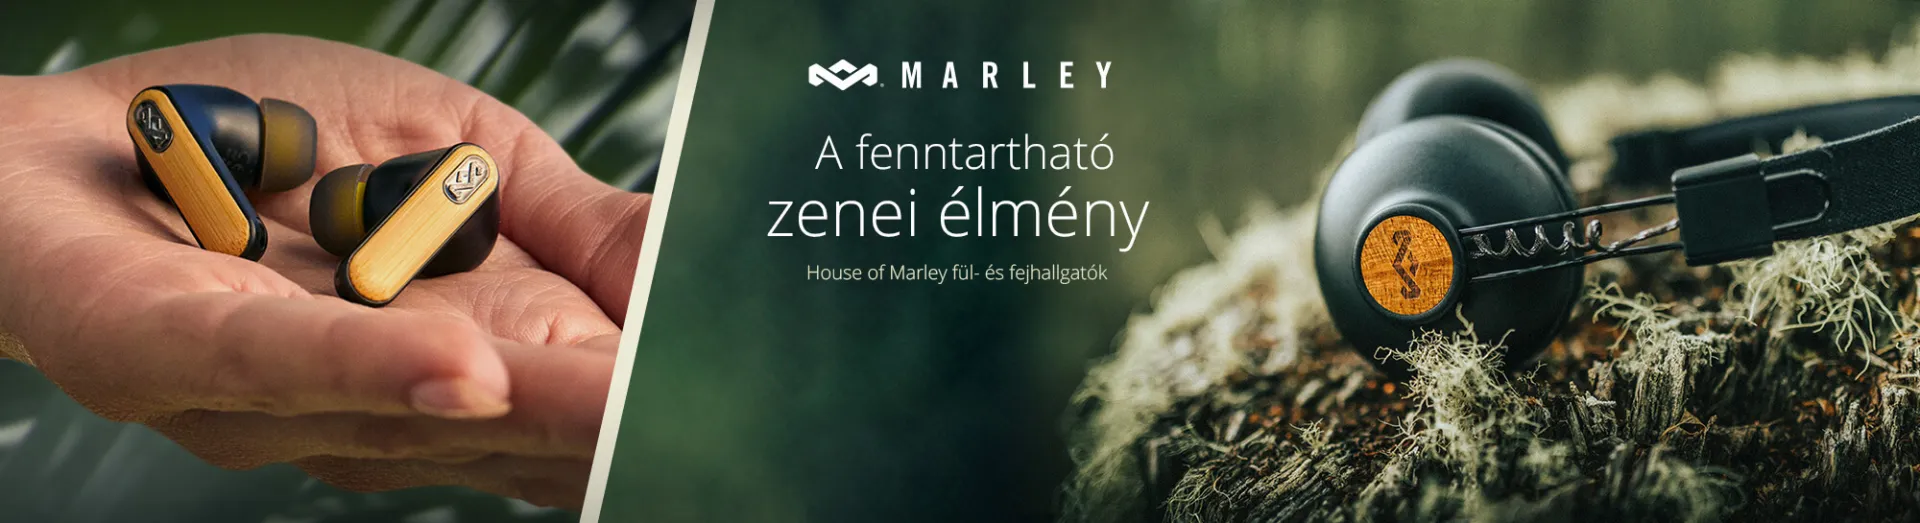 Marley, a fenntartható zenei élmény